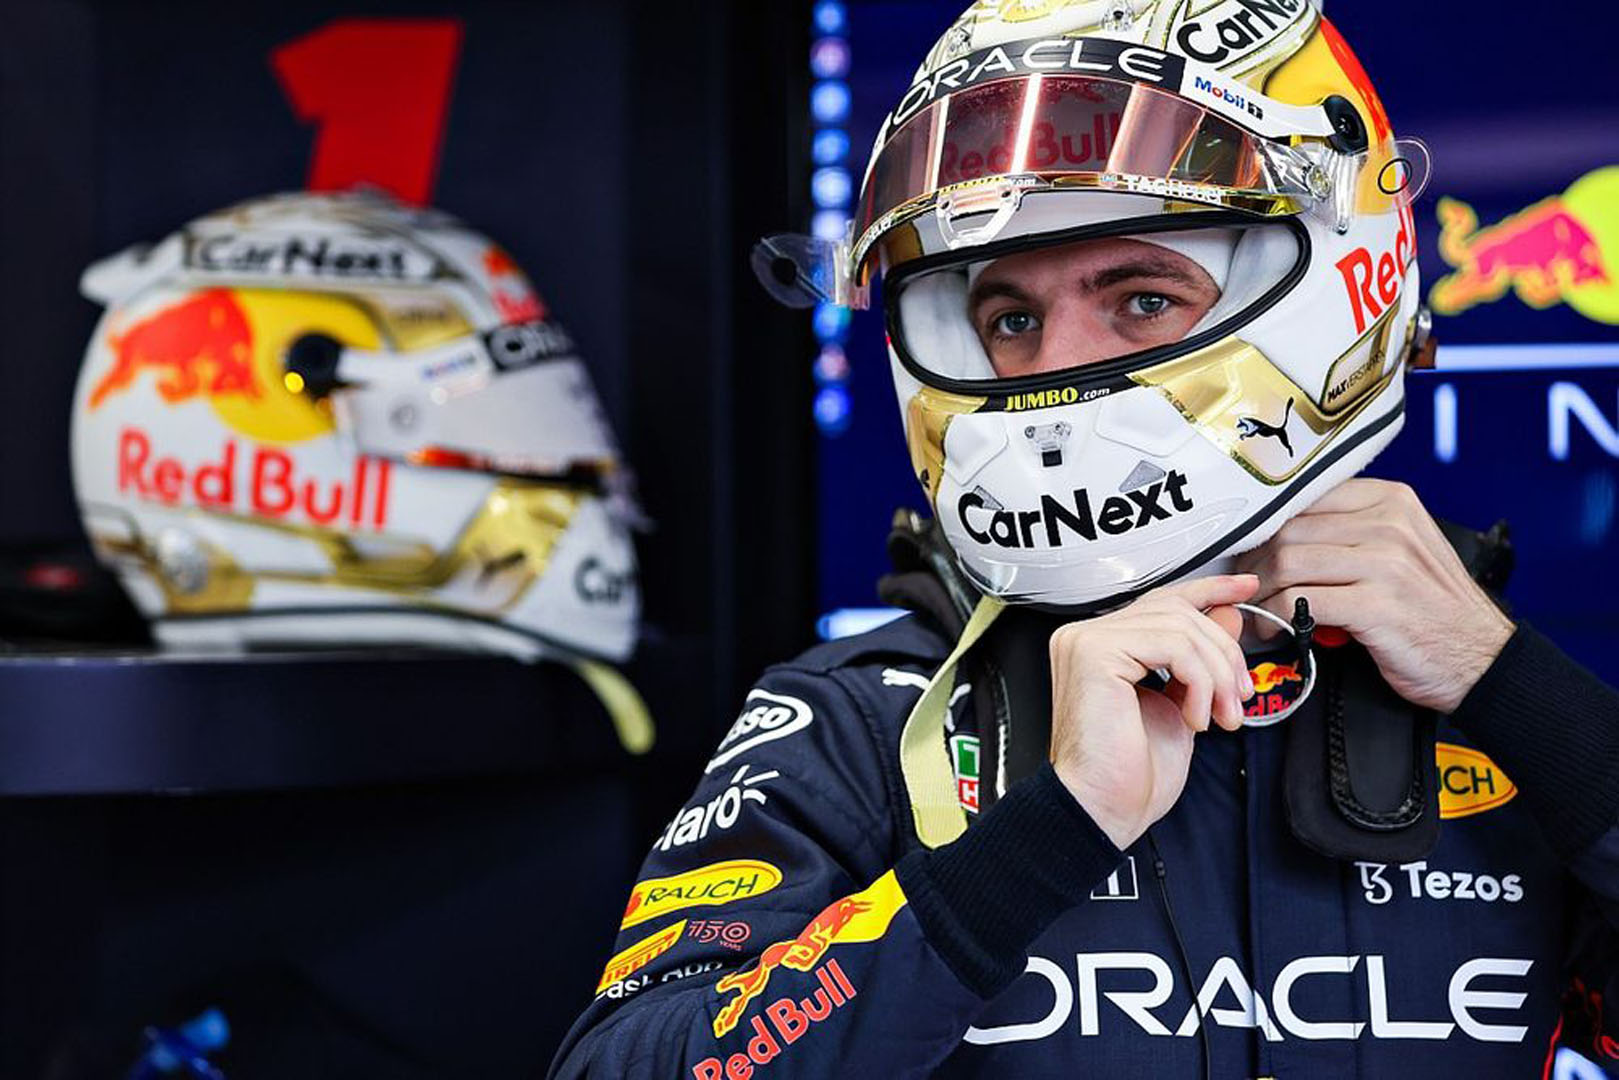 Formula 1'de son şampiyon Max Verstappen, 2028 yılına kadar Red Bull'da! Yeni maaşı dudak uçuklattı!